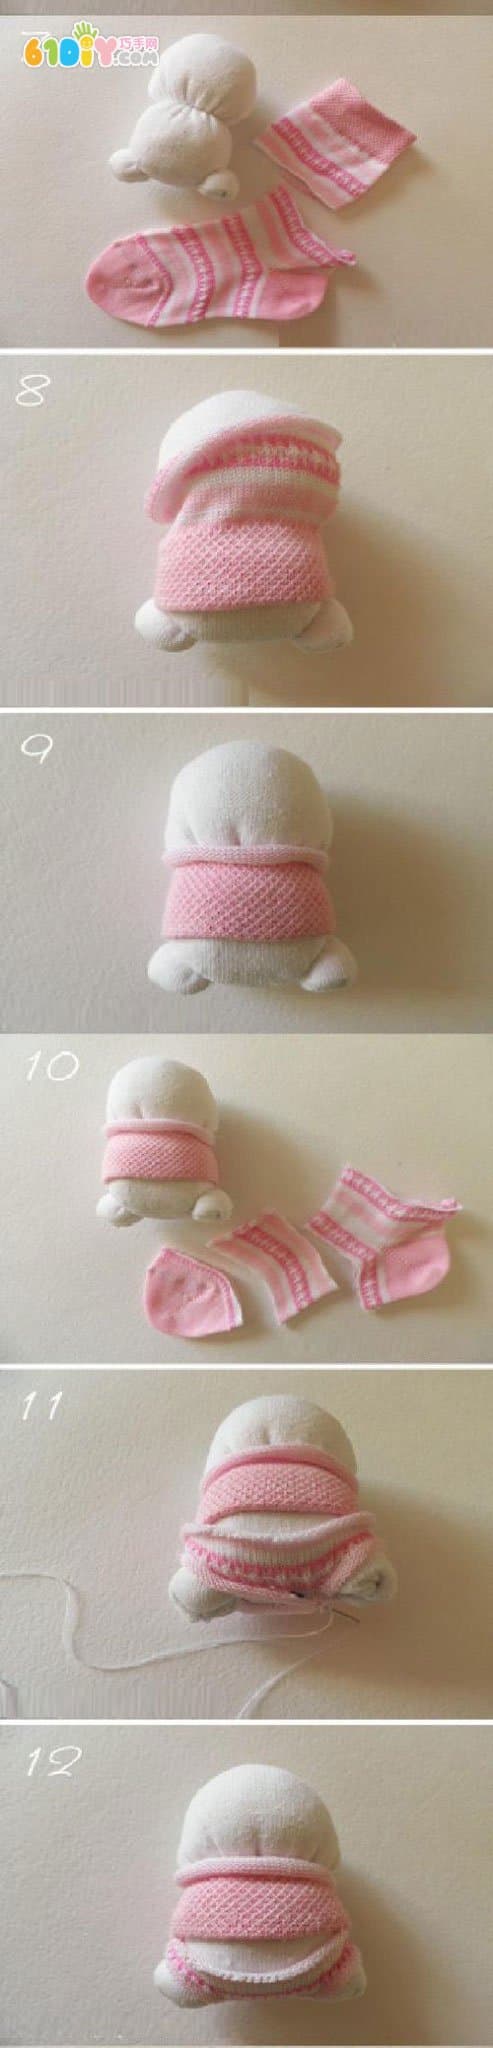 超可爱的袜子小兔子制作图解